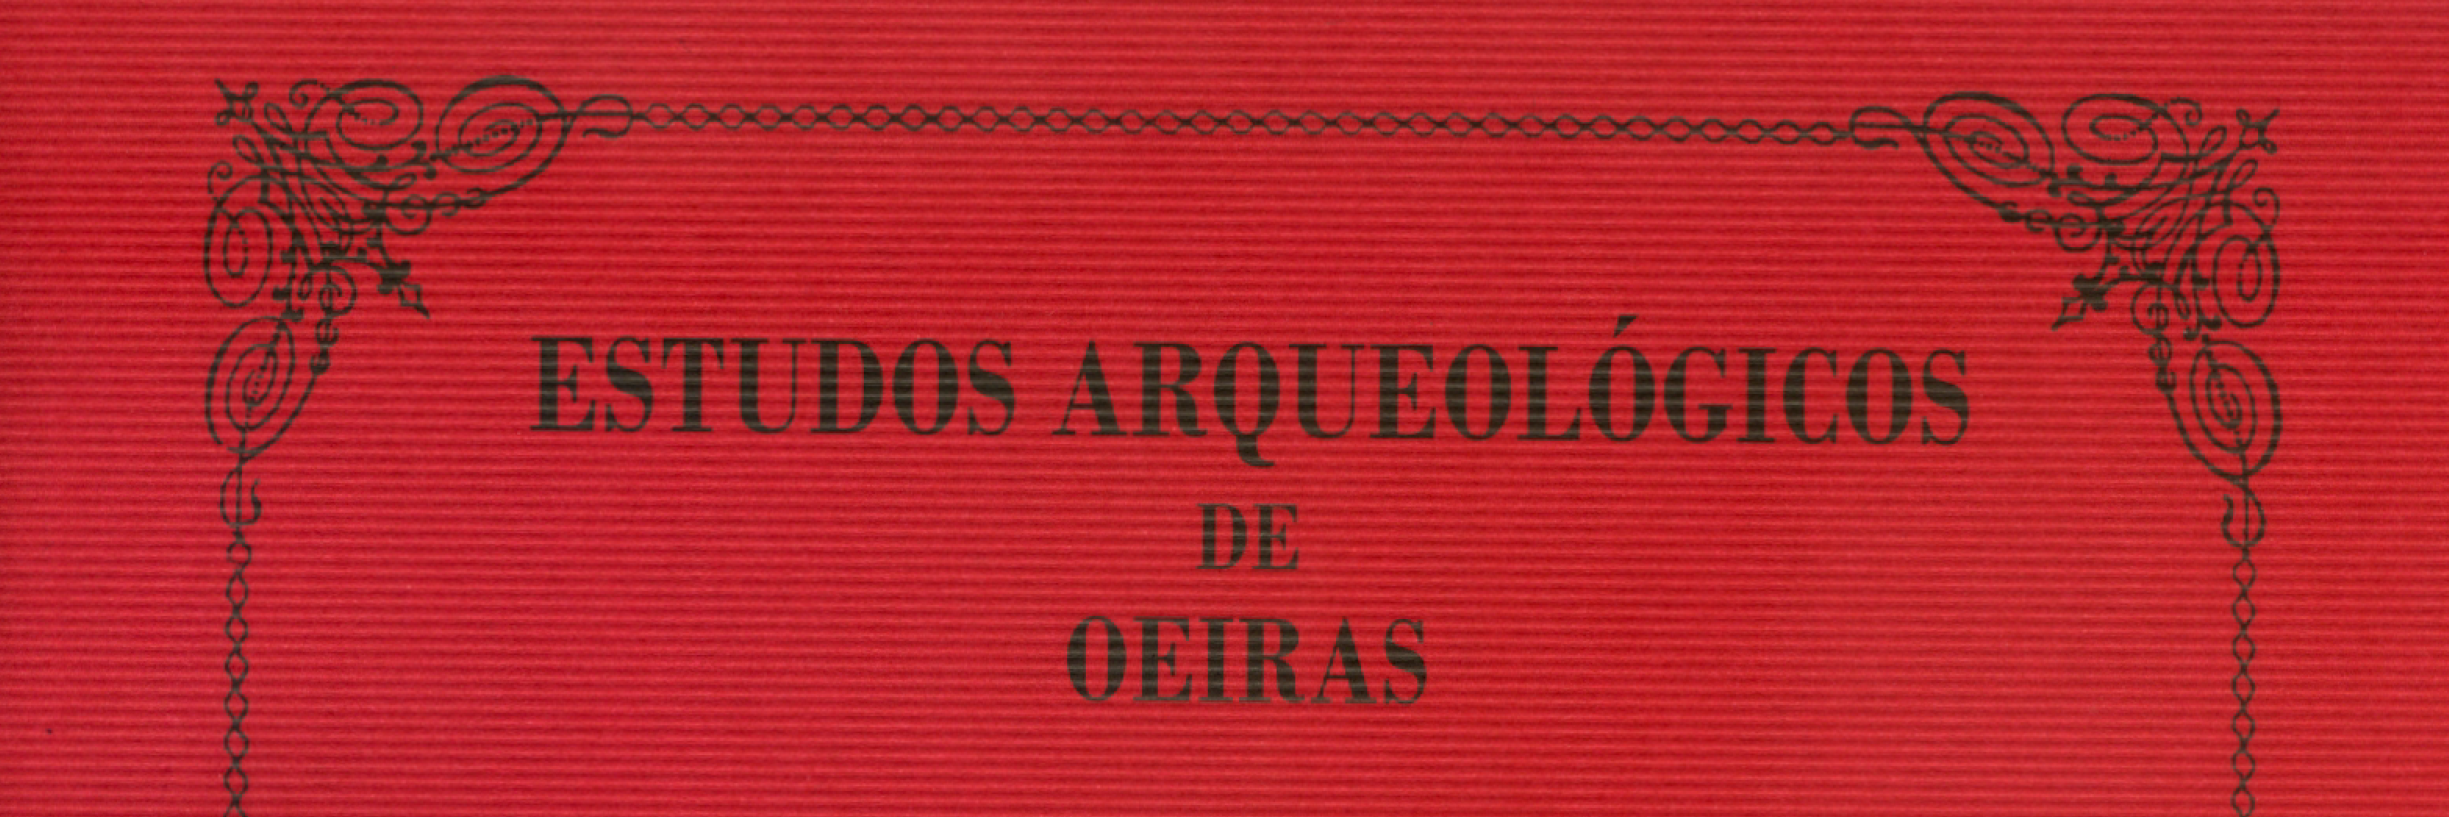 Estudos Arqueológicos de Oeiras, 19